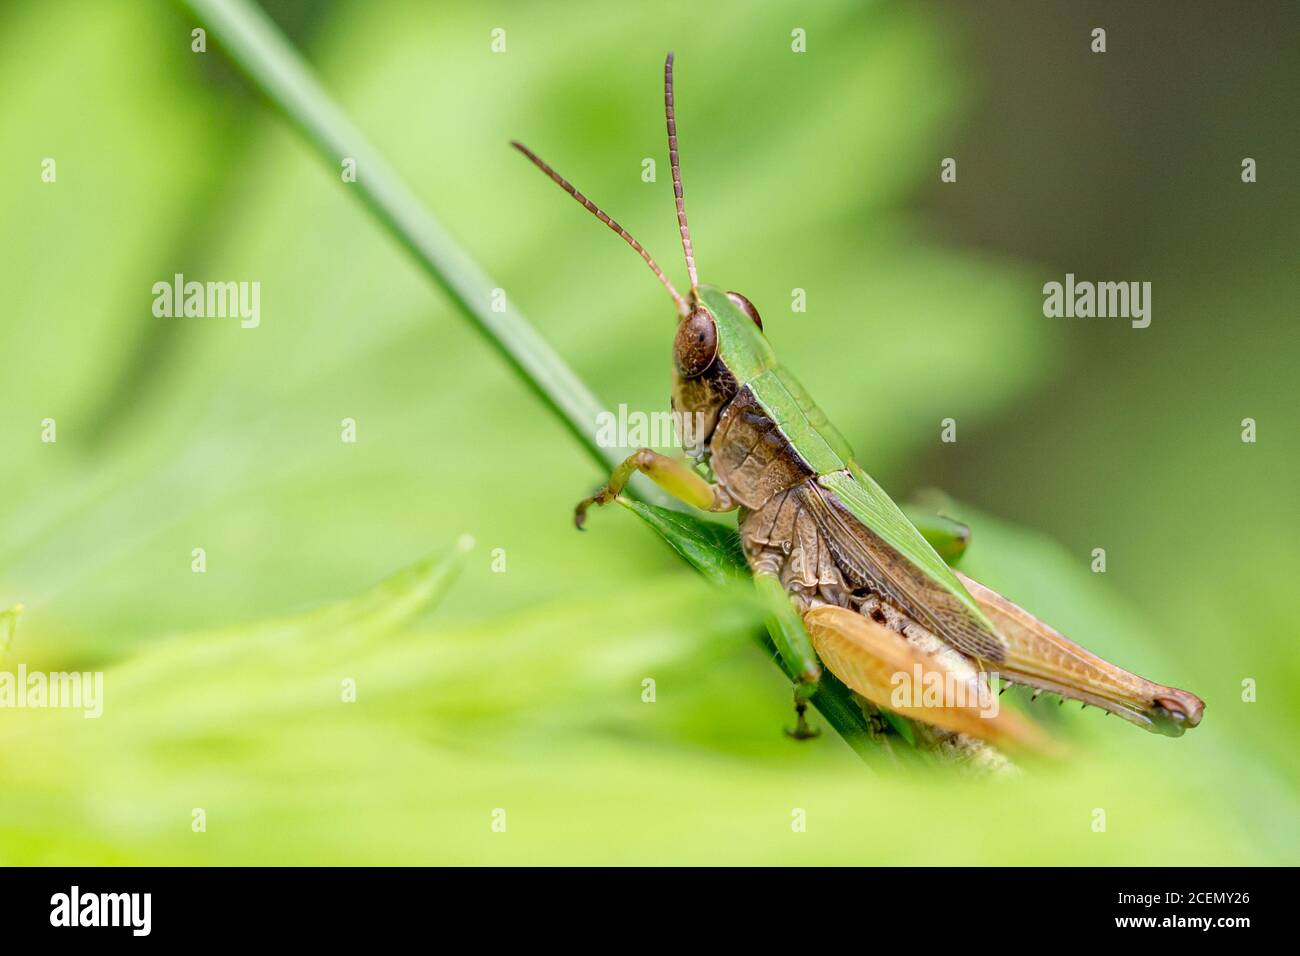 Una cavalletta verde e marrone con occhi grandi e antenne lunghe afferra il gambo di una pianta mentre contempla di saltare via. Foto Stock